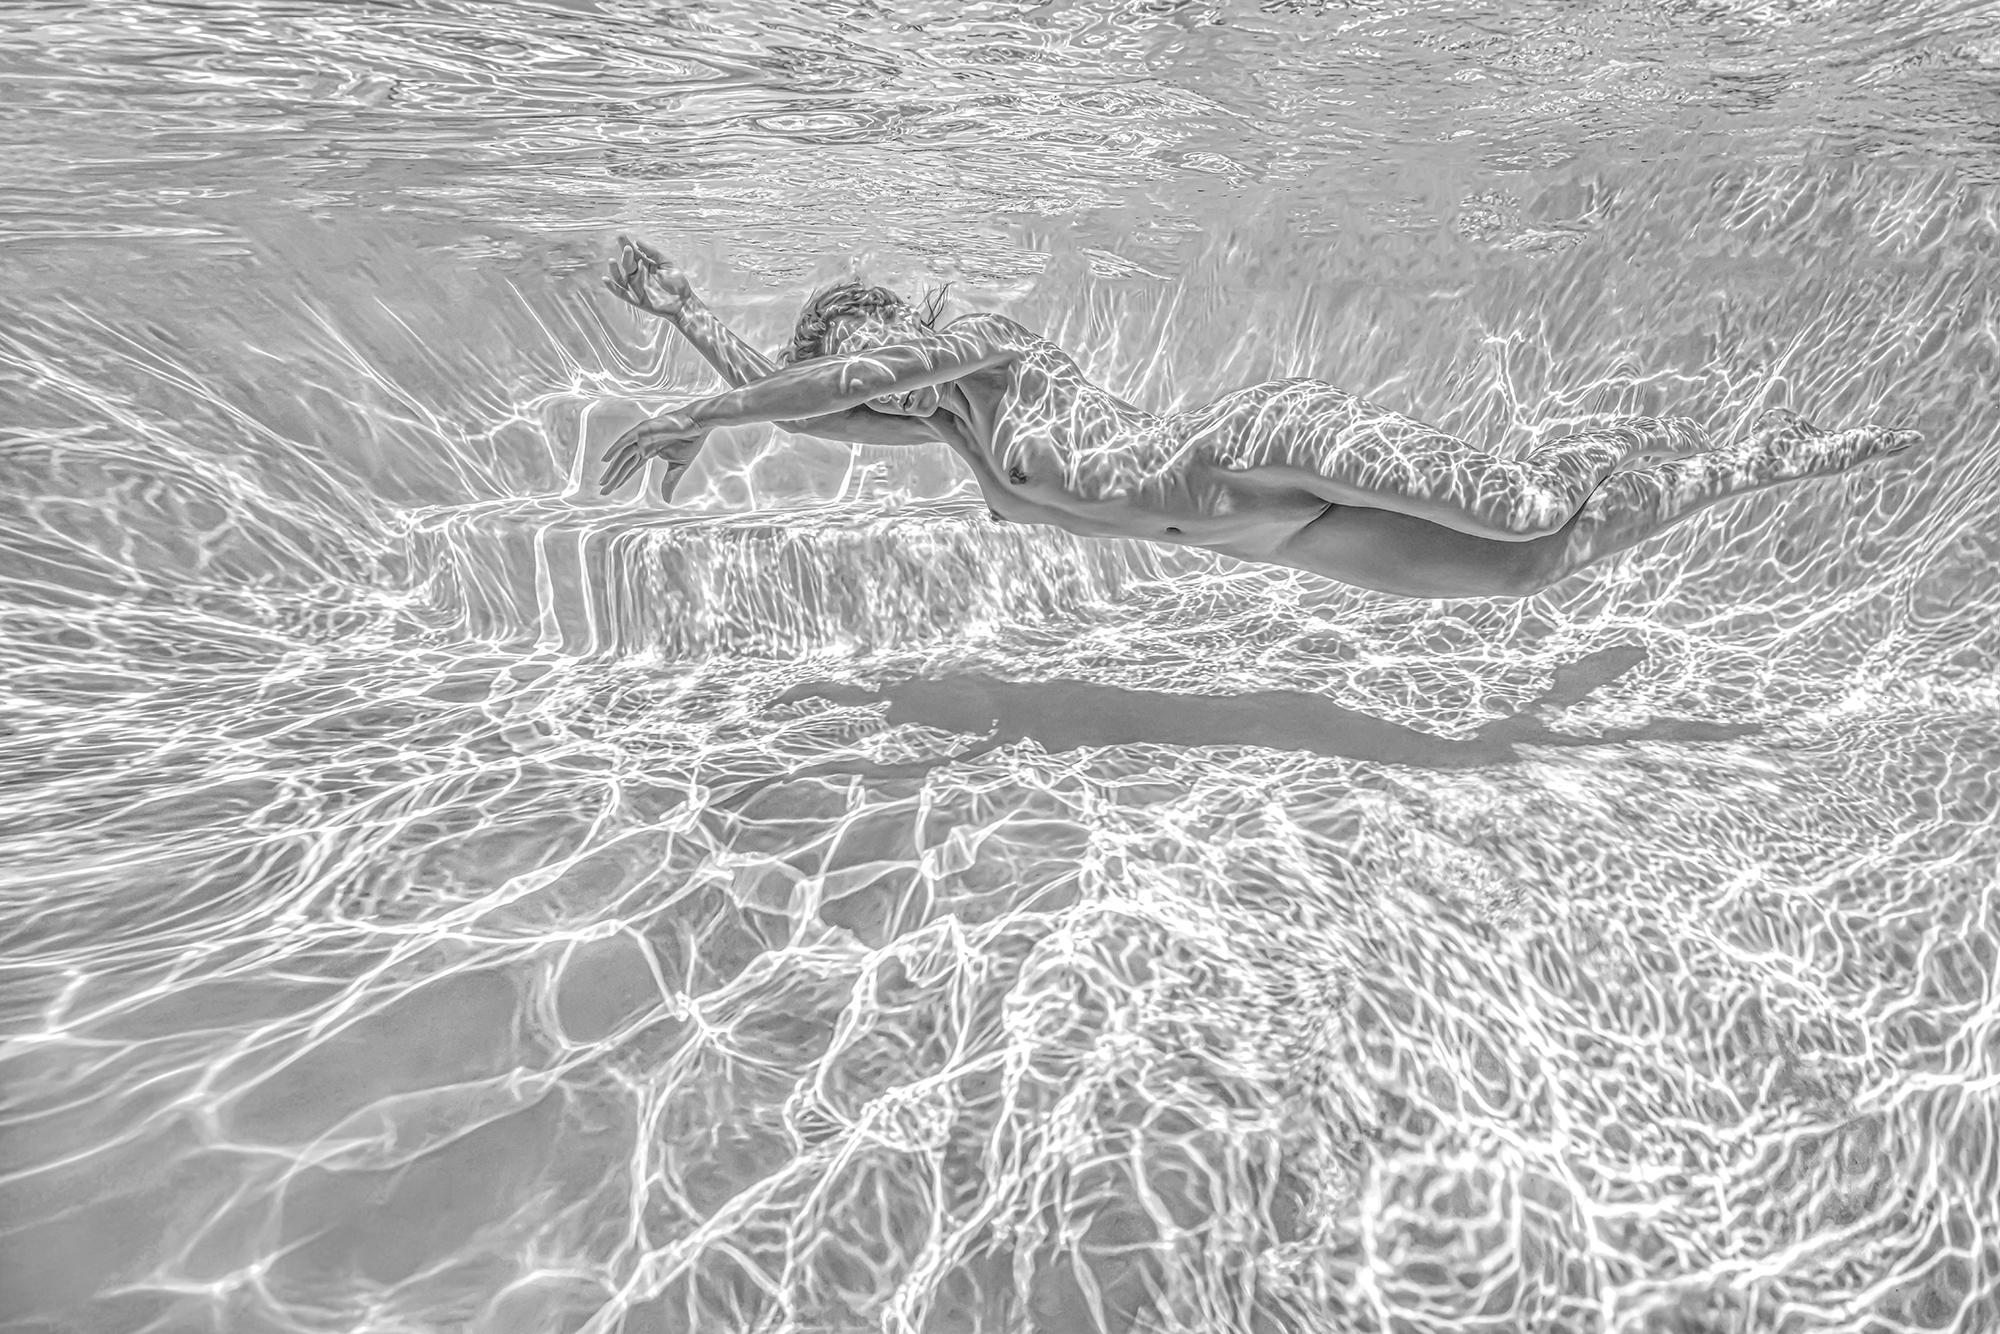 Black and White Photograph Alex Sher - Whiting - photographie sous-marine de nu en noir et blanc - tirage sur papier 24" x 36"